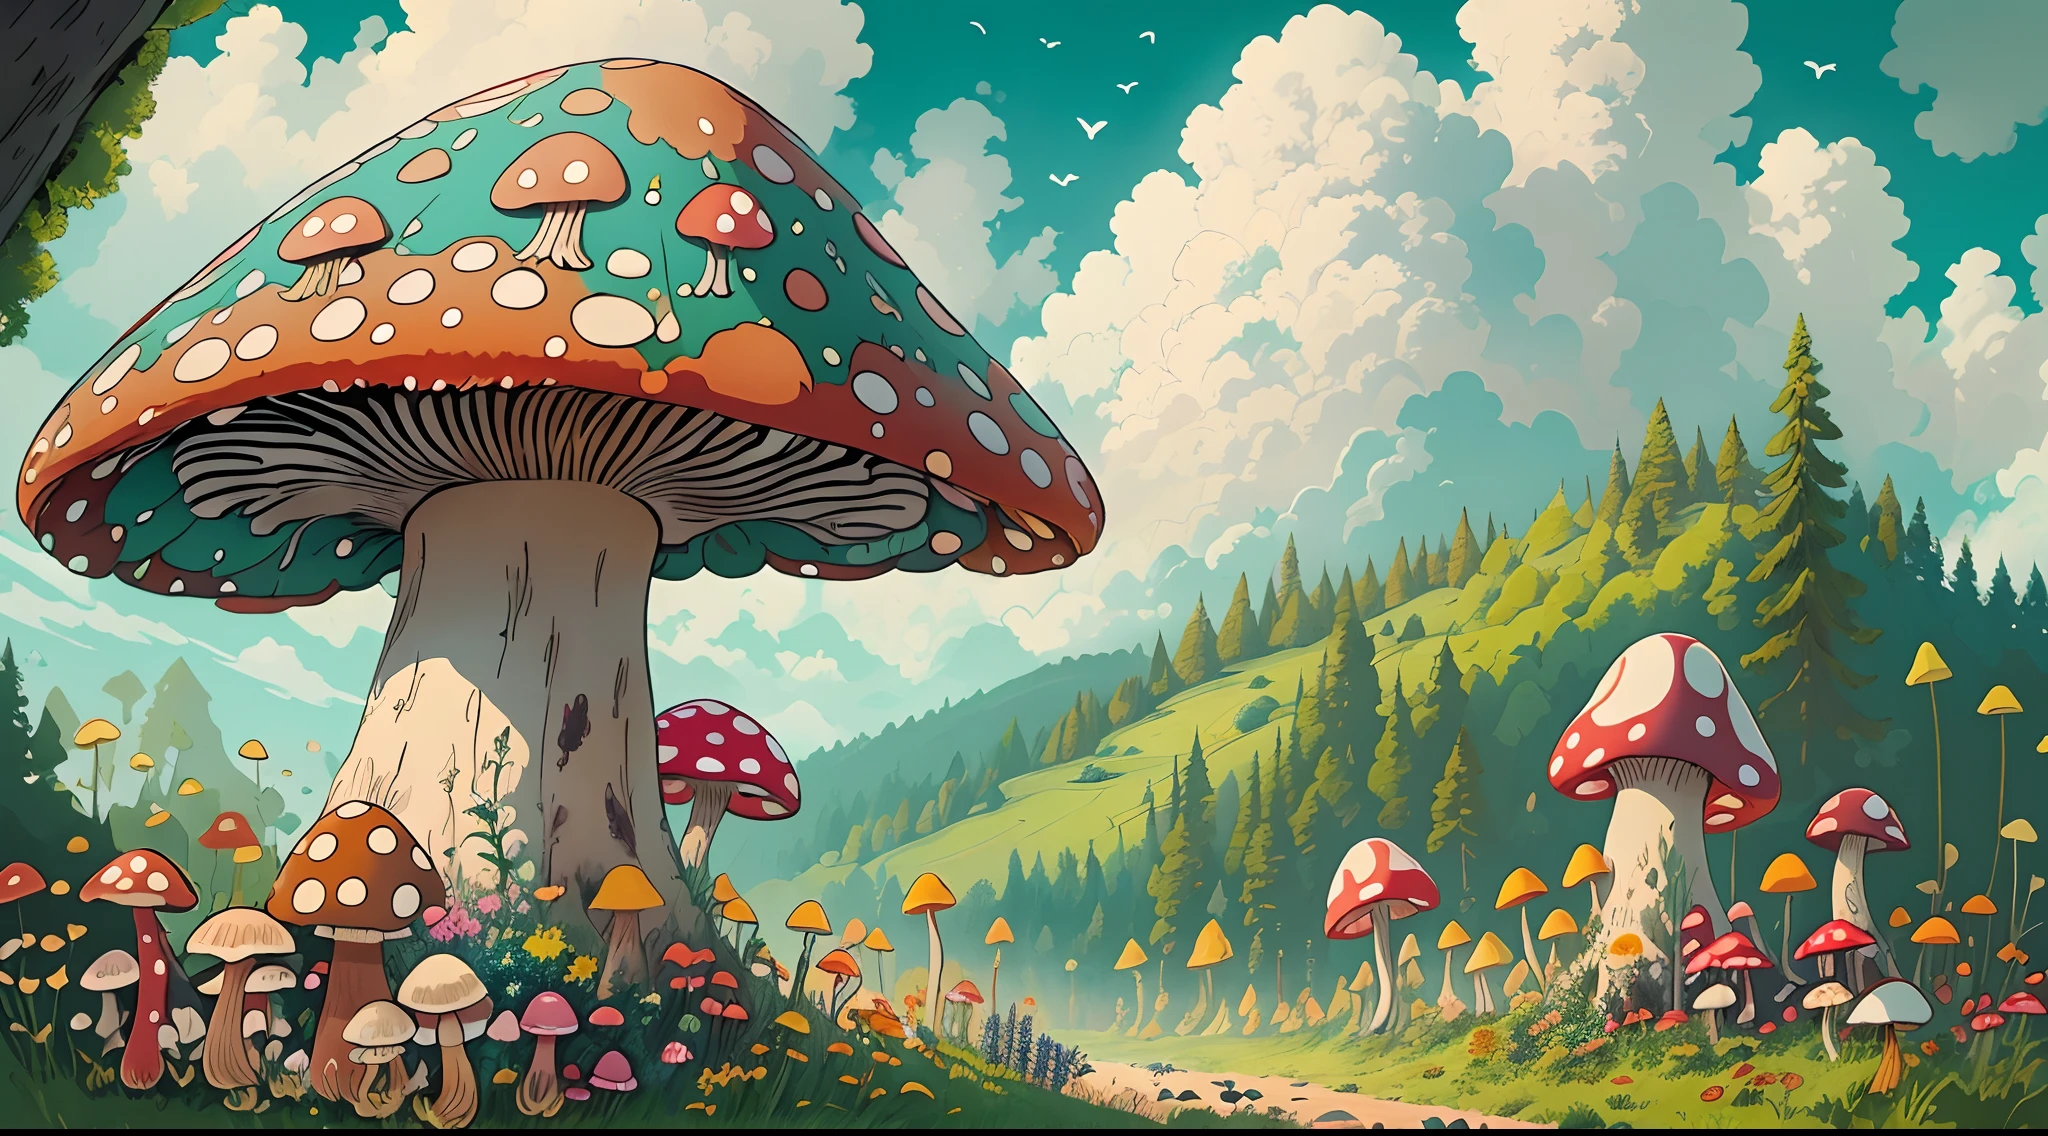 與現實的、保持真實、美化、蘑菇、a large amount of 蘑菇、森林、在樹林裡、森林里的路、顏色々Colored 蘑菇、大蘑菇、巨型蘑菇、令人驚嘆的風景油畫吉卜力工作室宮崎駿花瓣草甸藍天白雲--v6